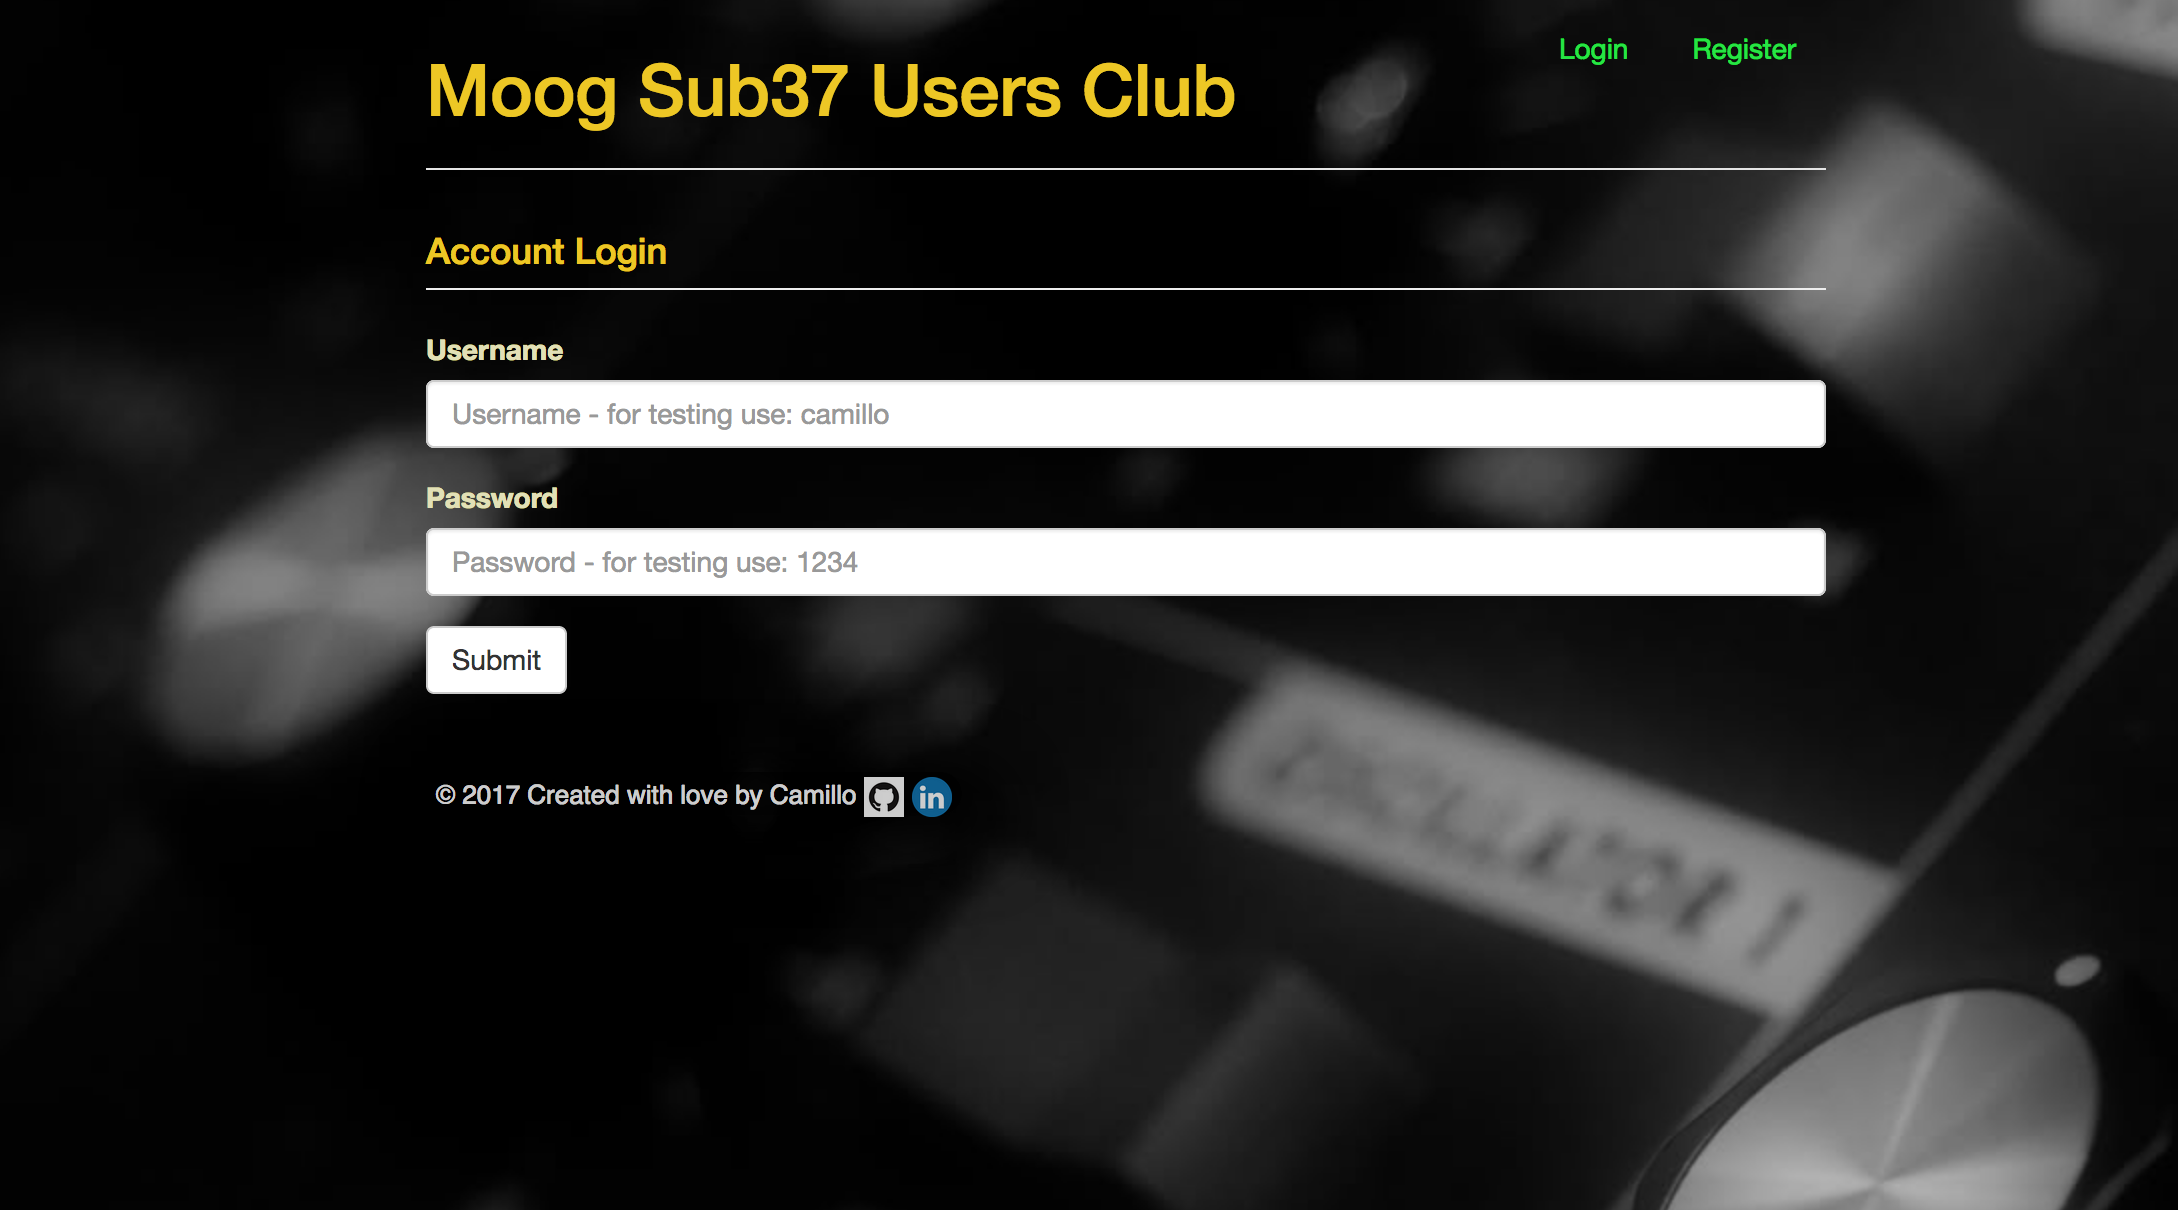 Moog Sub37 Users Club